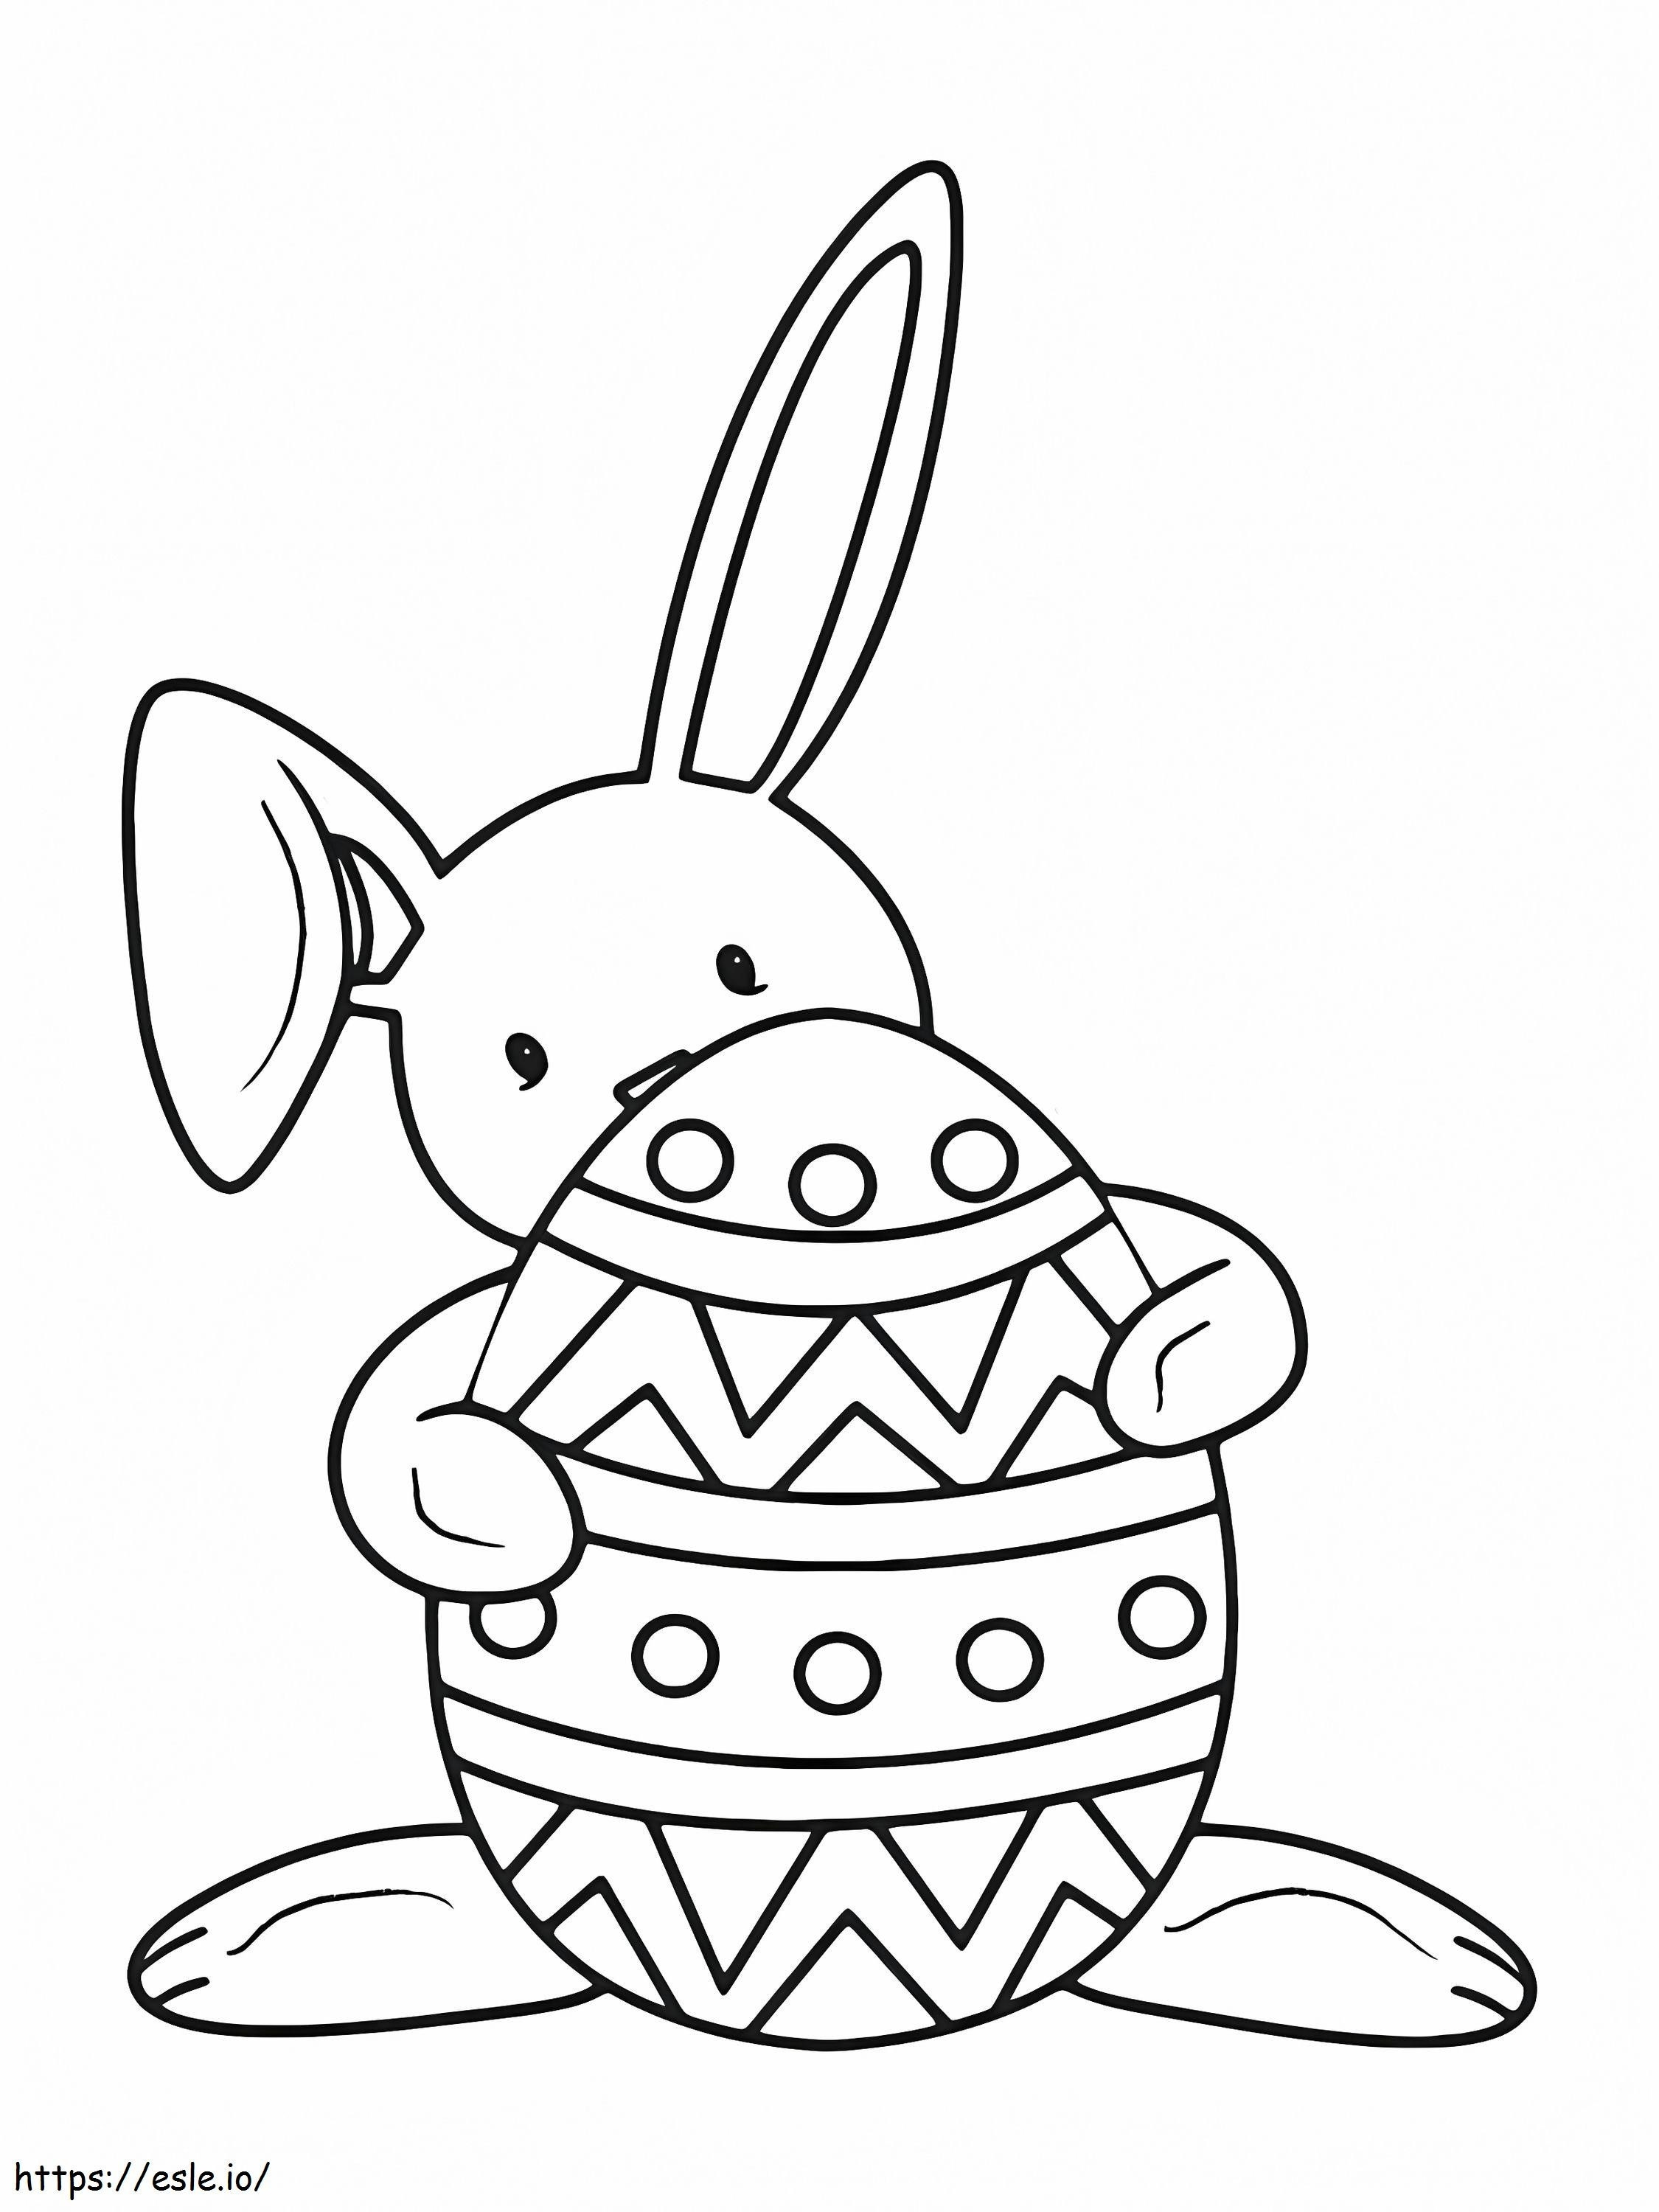 Coelhinho da Páscoa atrás do ovo para colorir